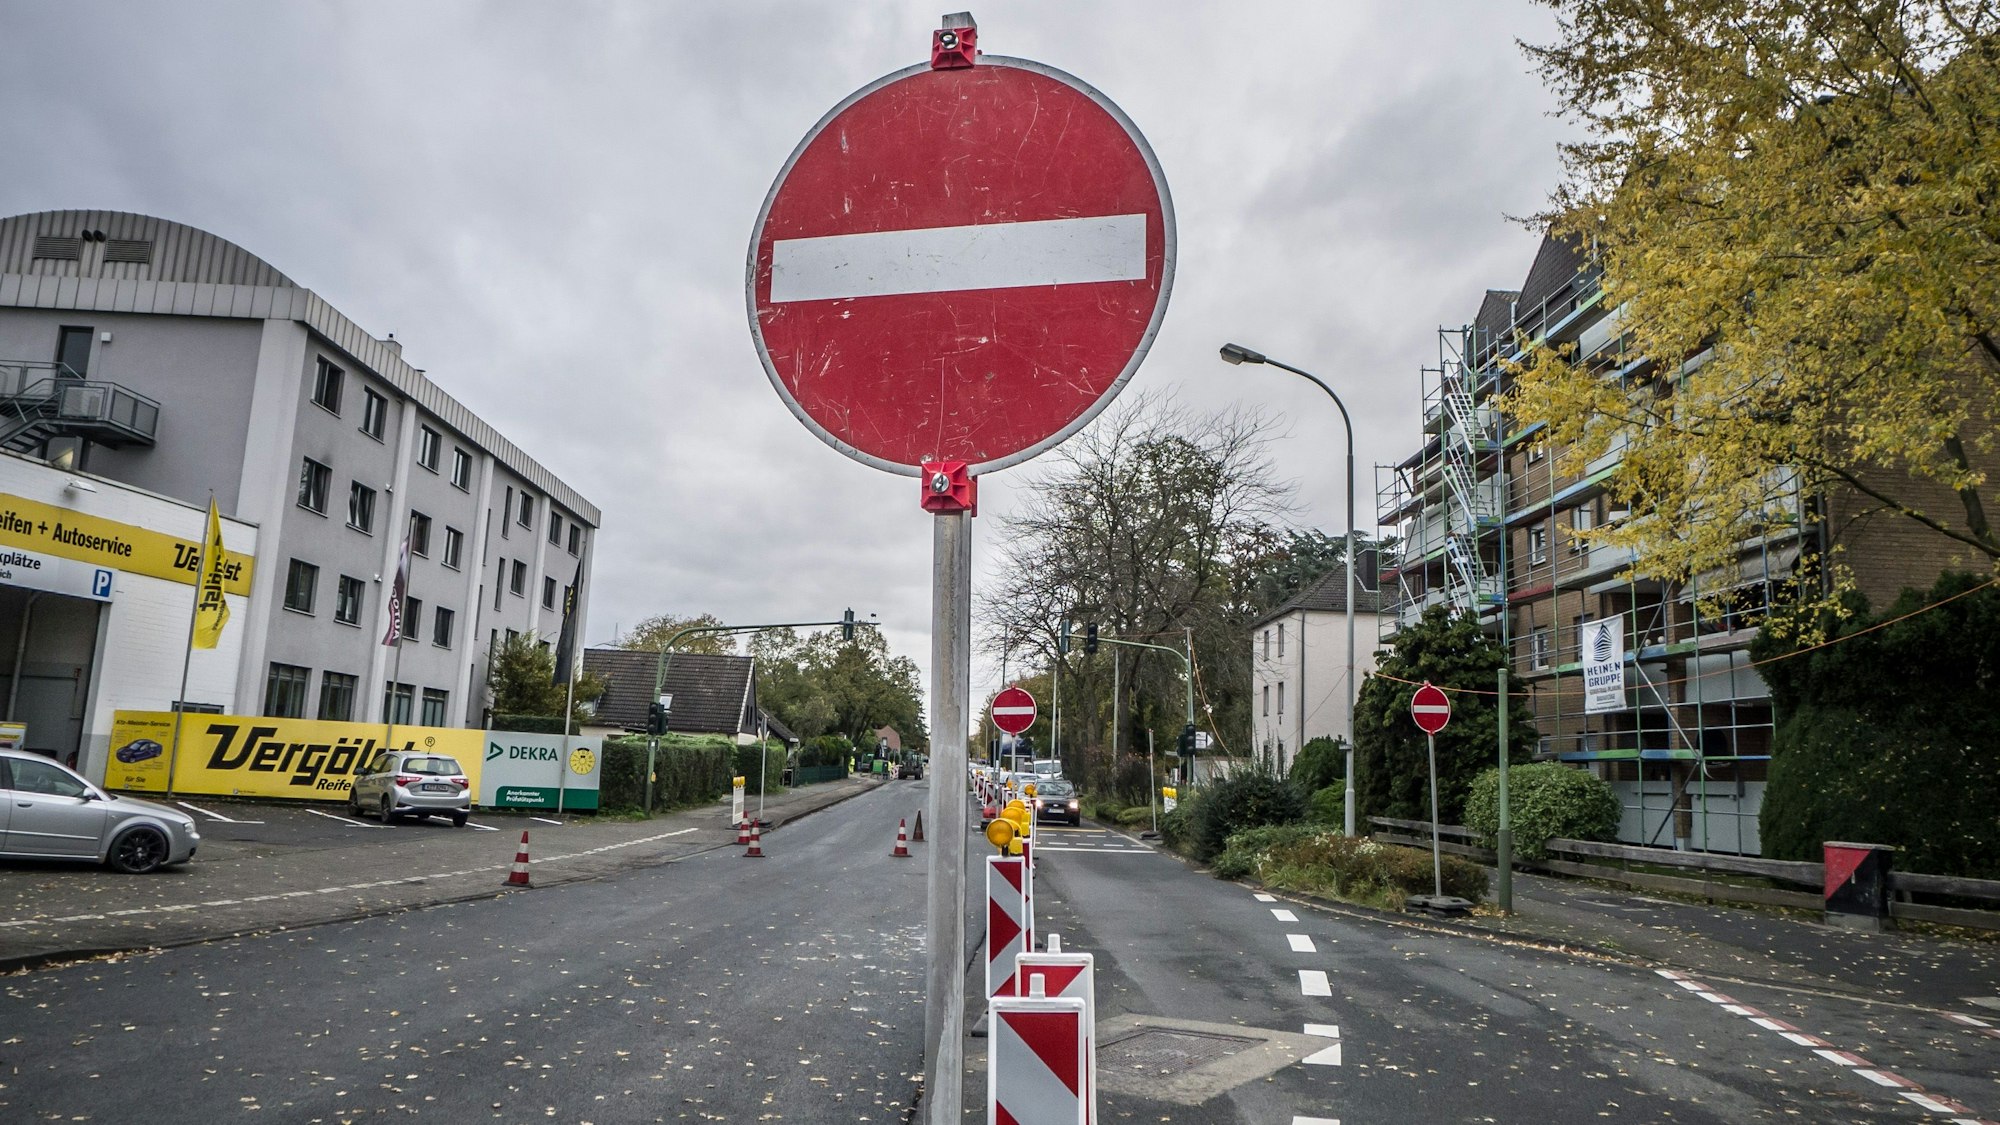 EIn Durchfahrt-Verboten-Schild.